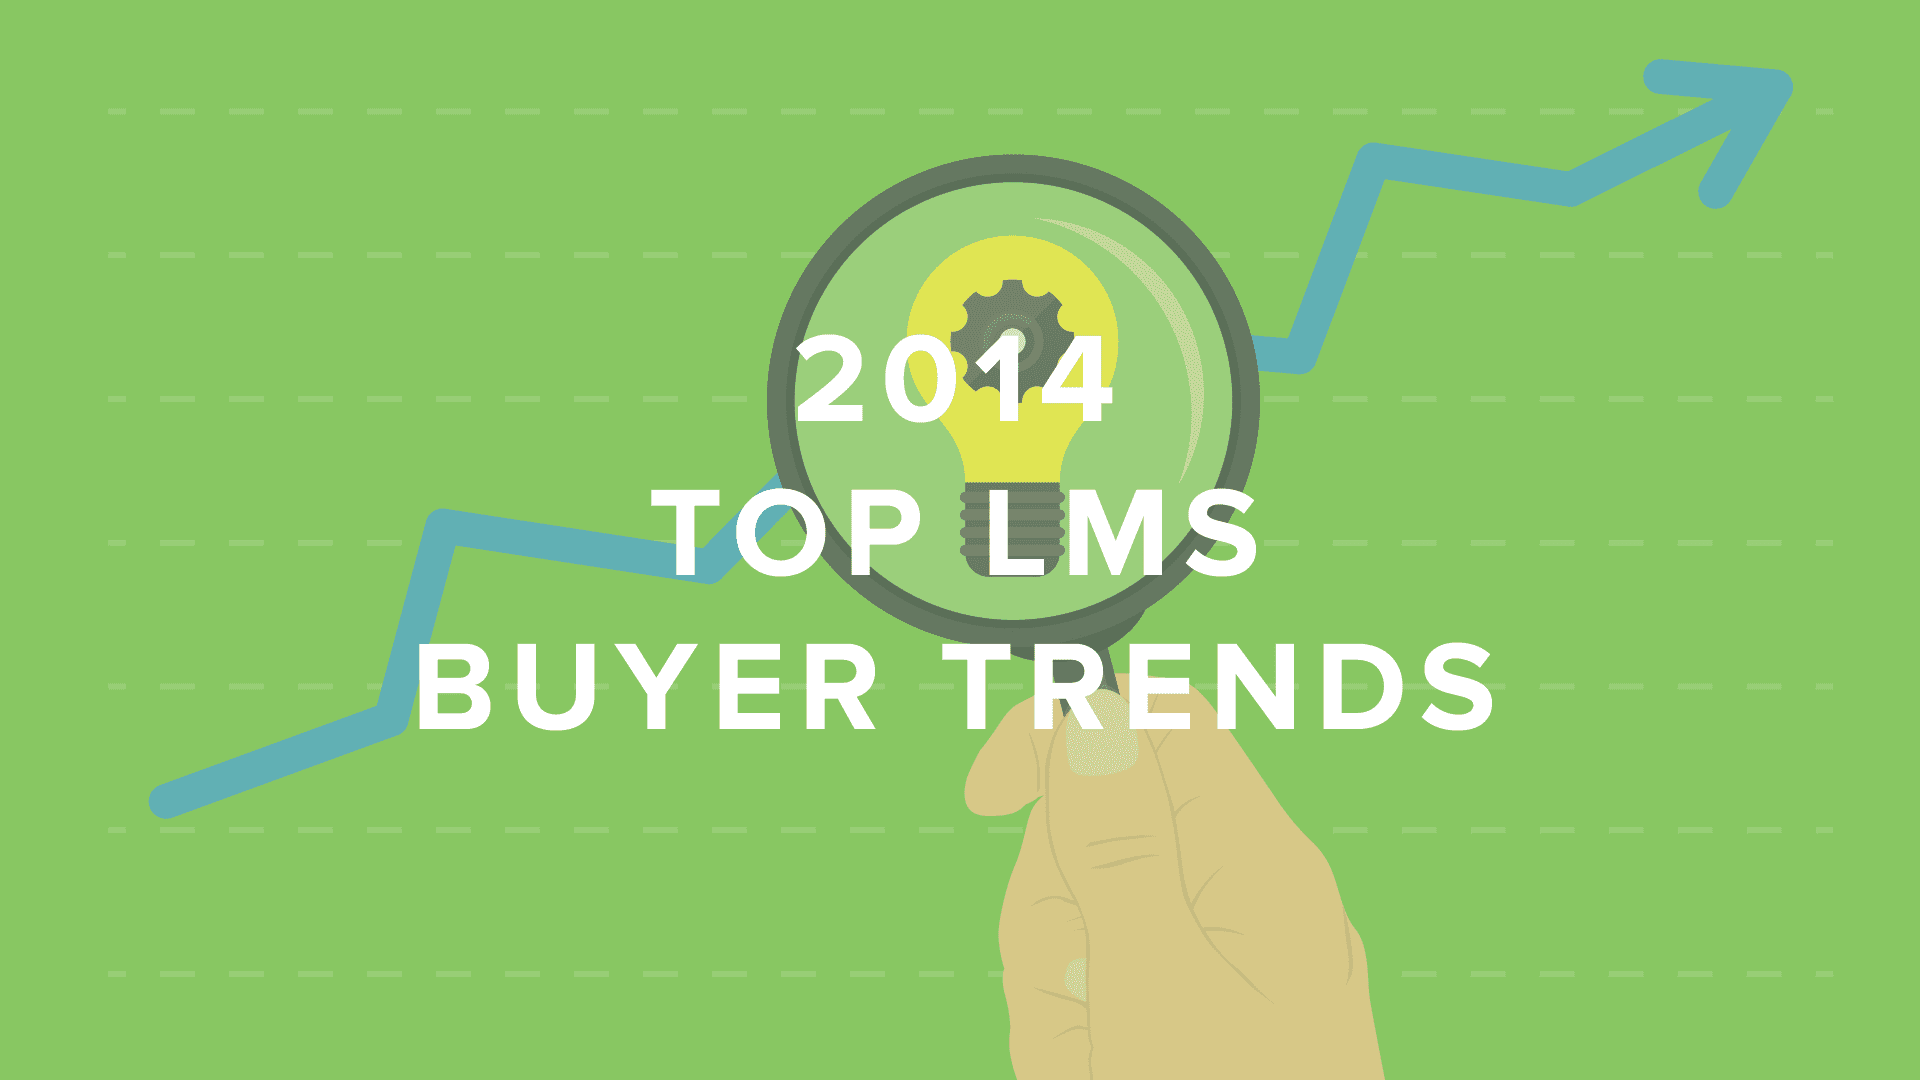 DigitalChalk: Top LMS Buyer Trends in 2014